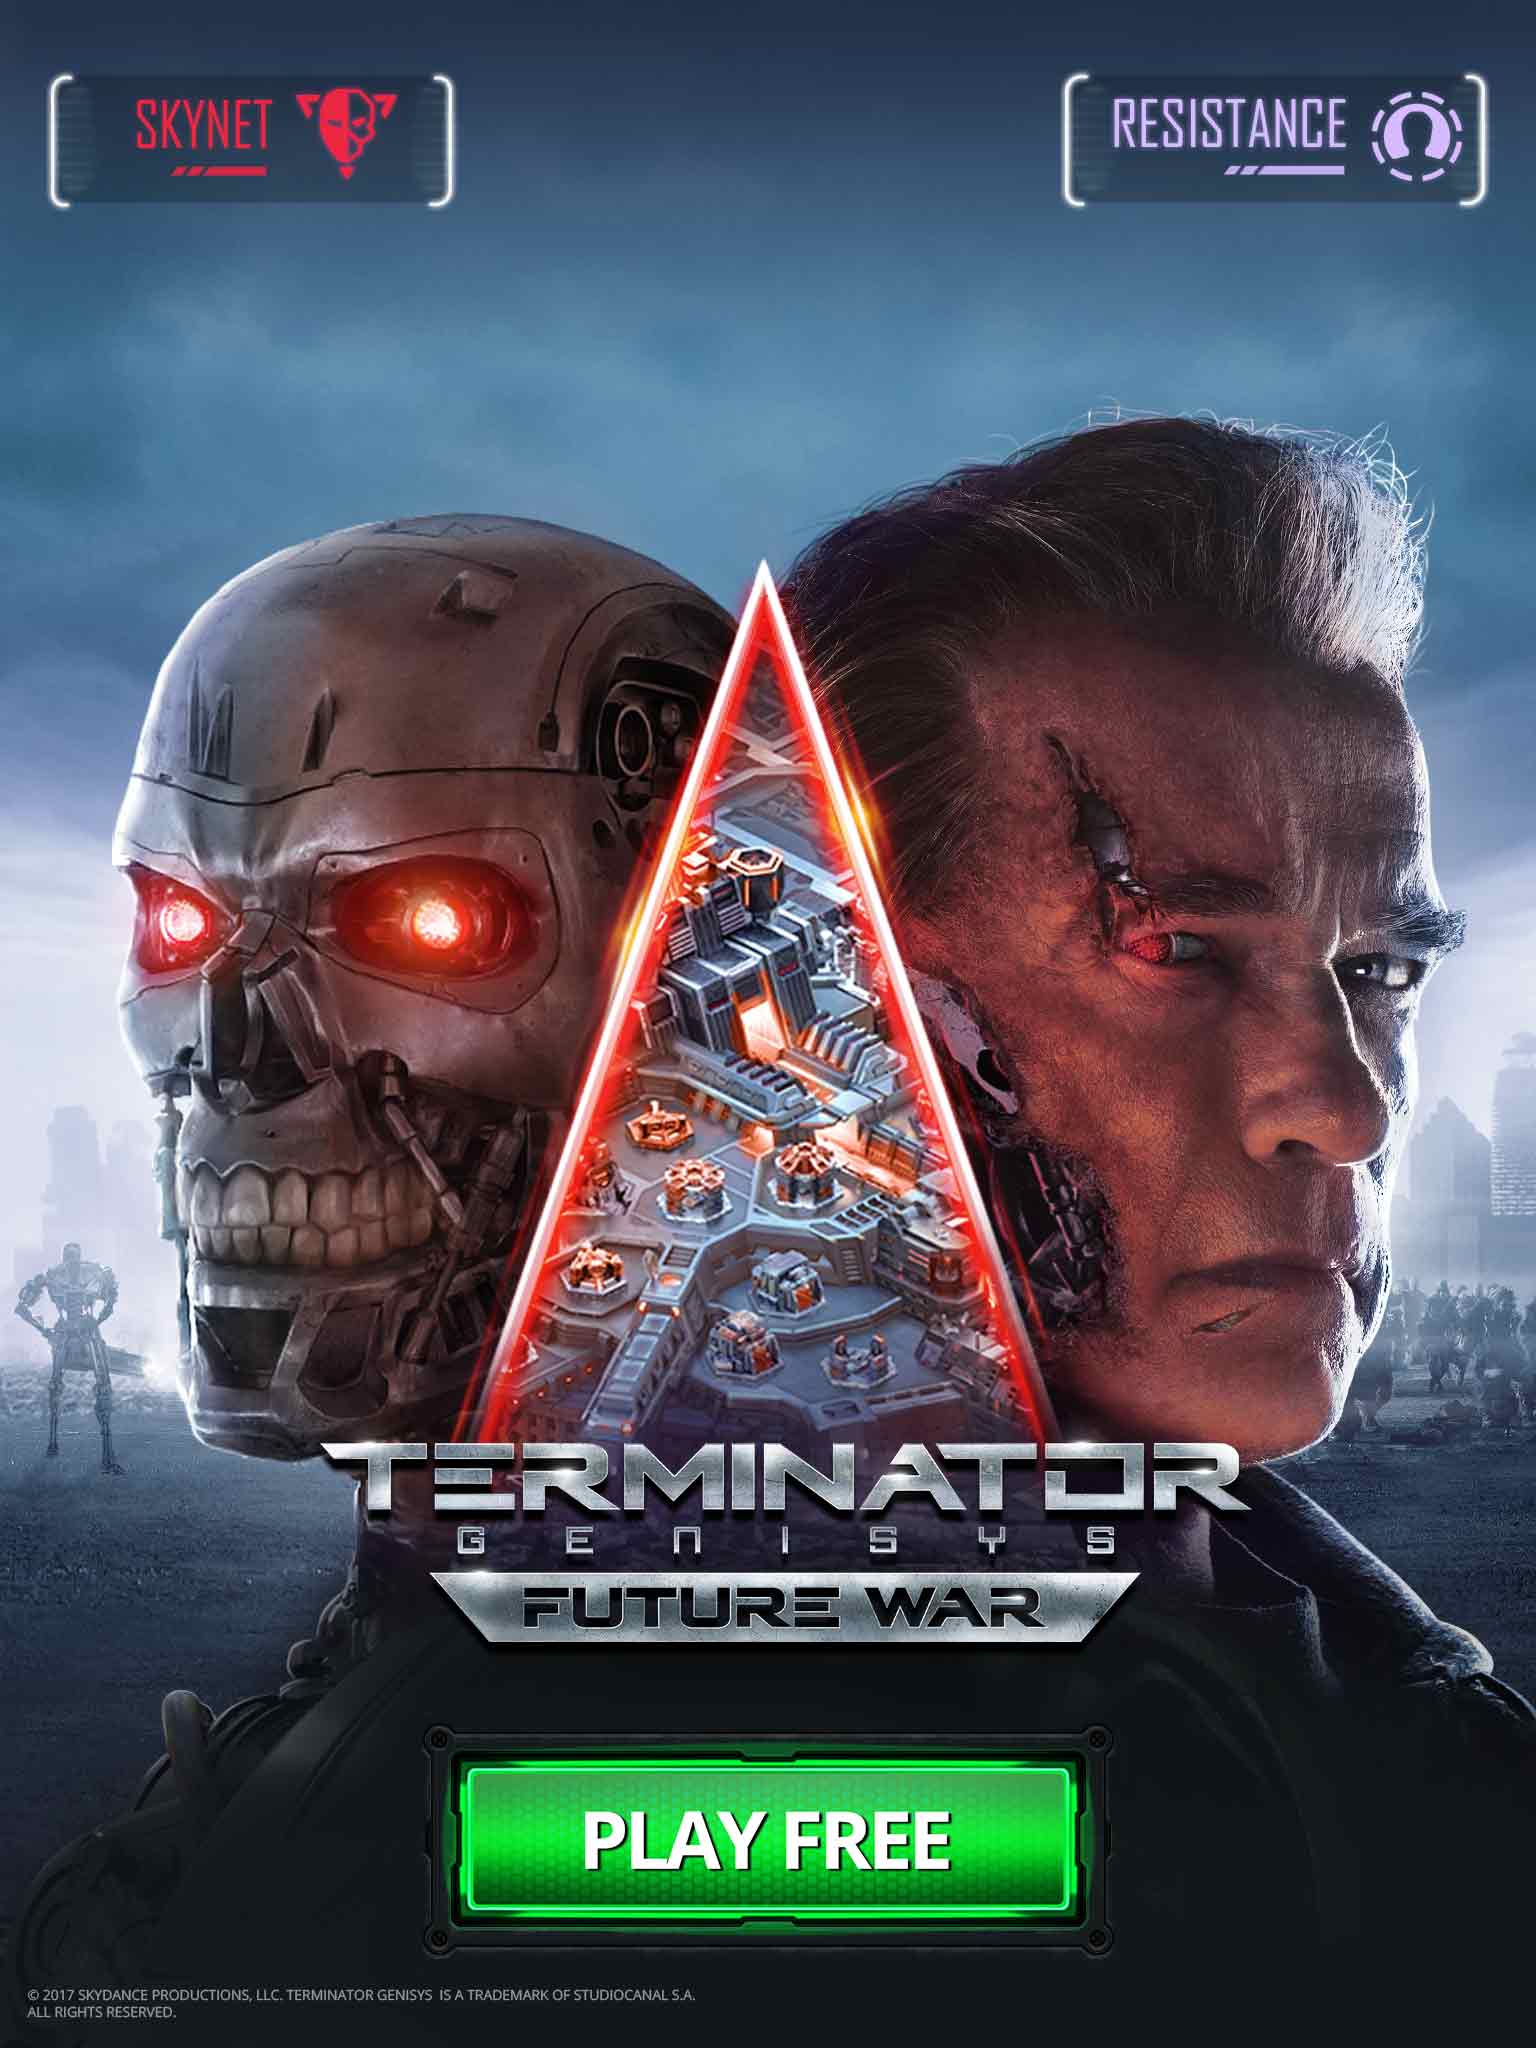 press-kit-terminator-genisys-future-war-3